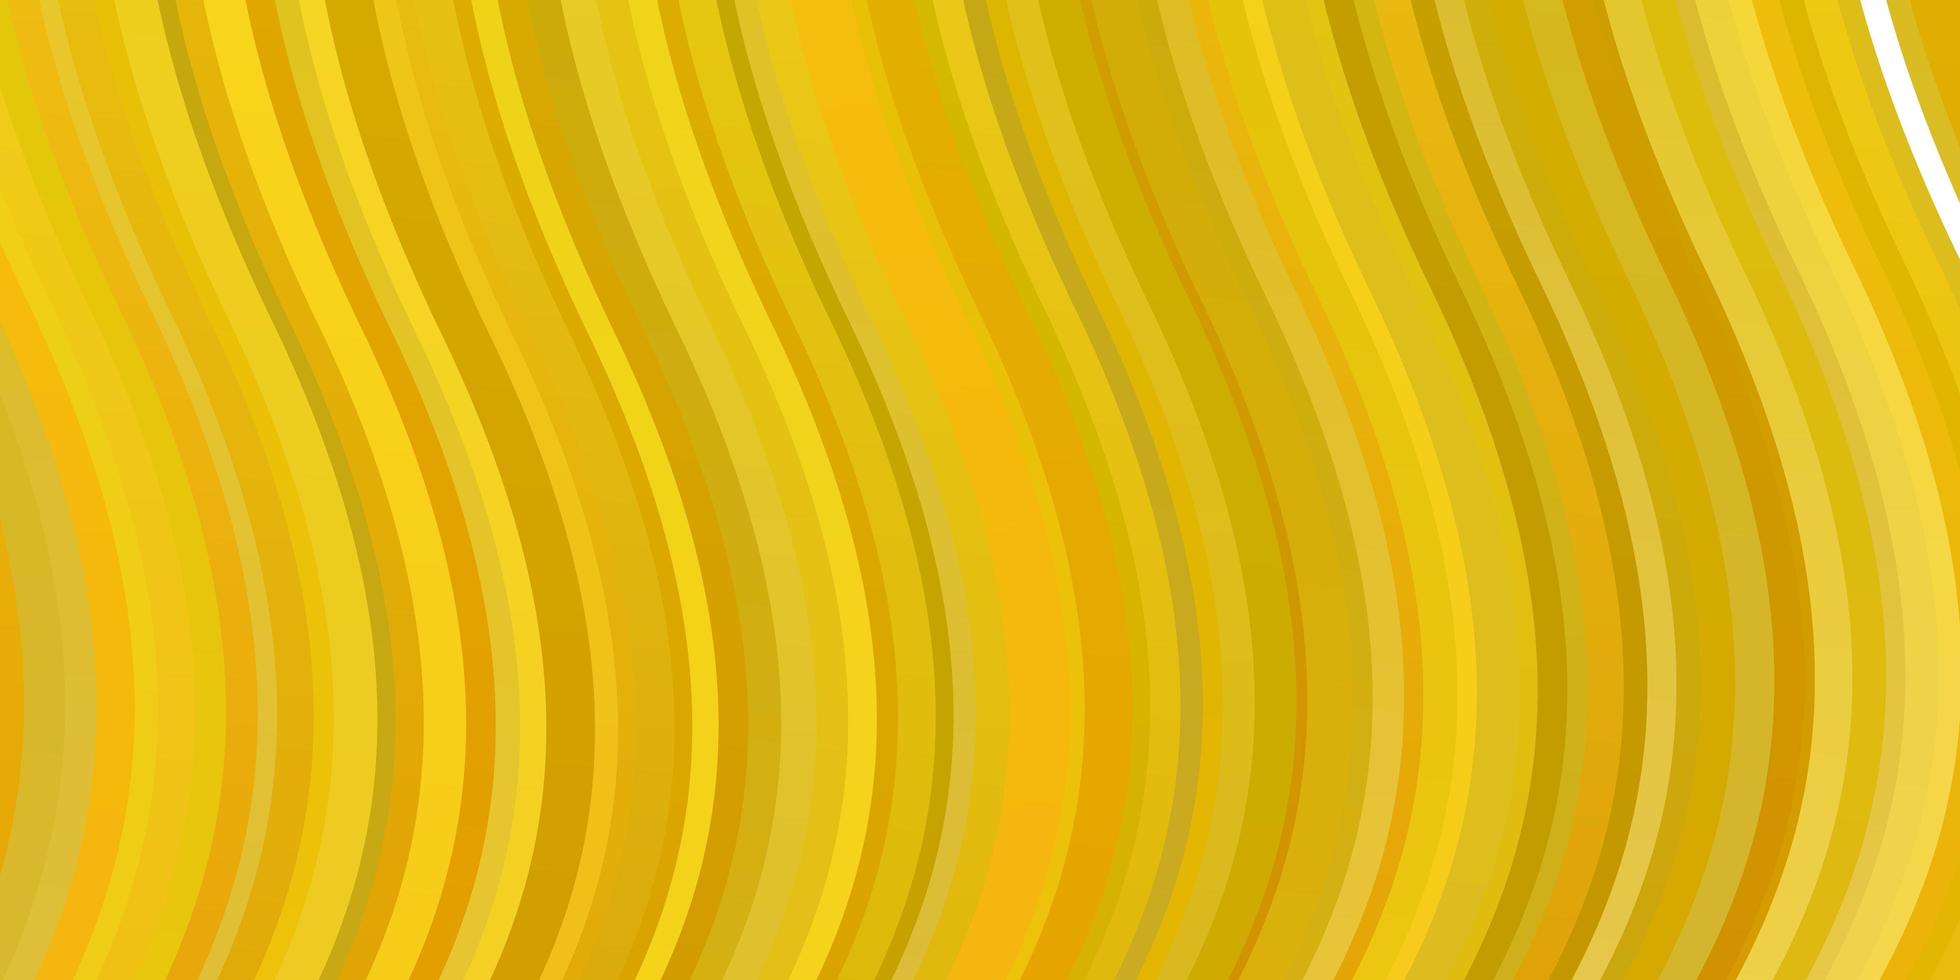 ljus gul vektor bakgrund med böjda linjer illustration i halvton stil med lutning kurvor mönster för webbplatser målsidor